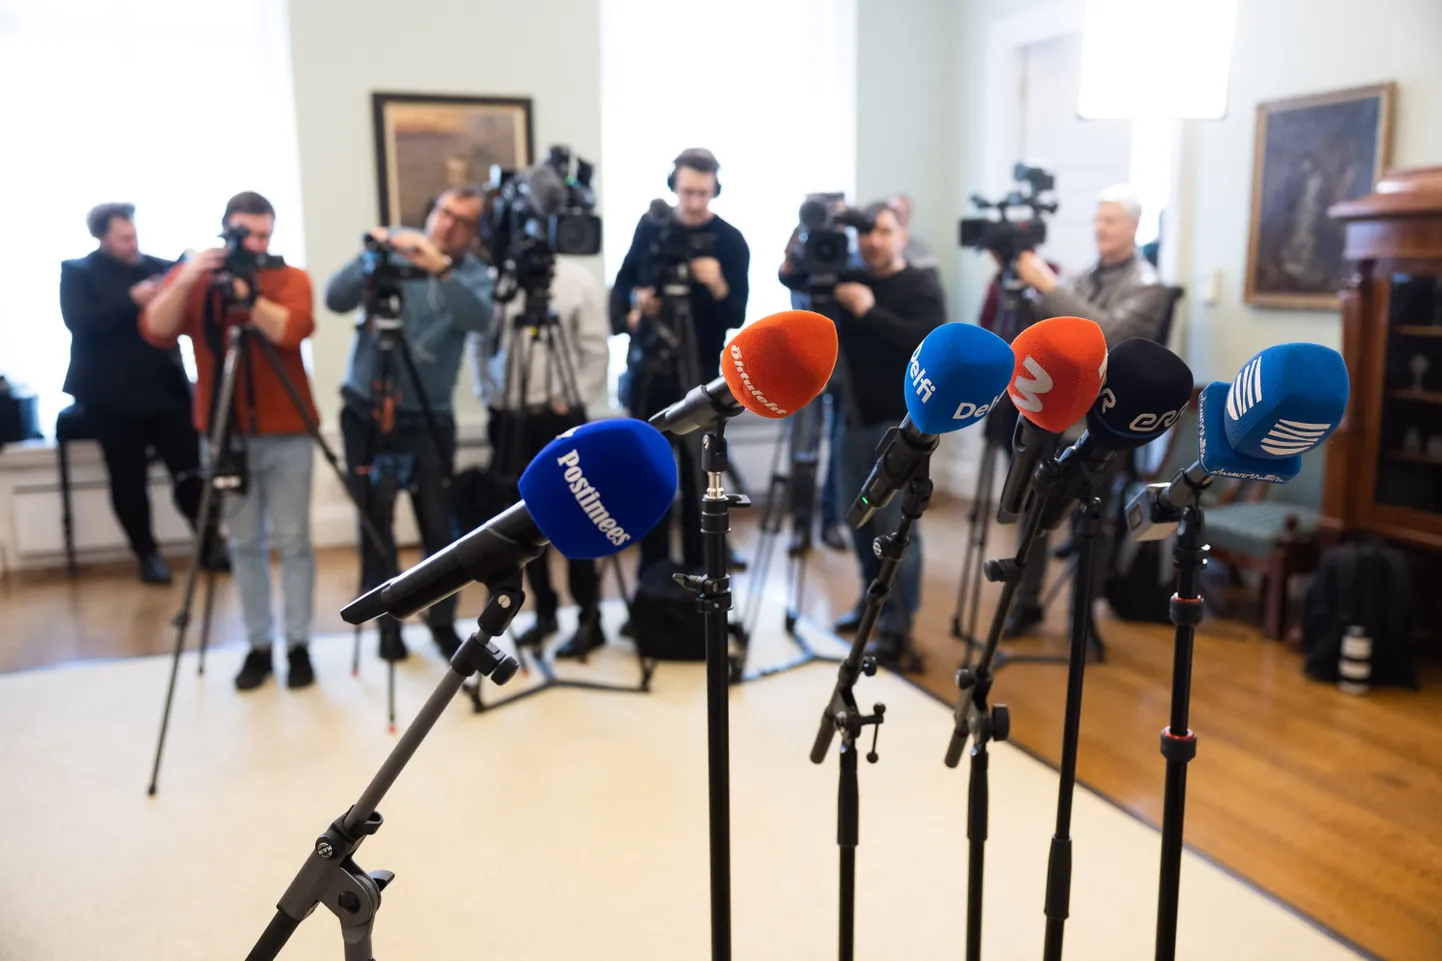 Eesti kukkus aastaga ajakirjandusvabaduse indeksis nelja koha võrra kaheksandaks.